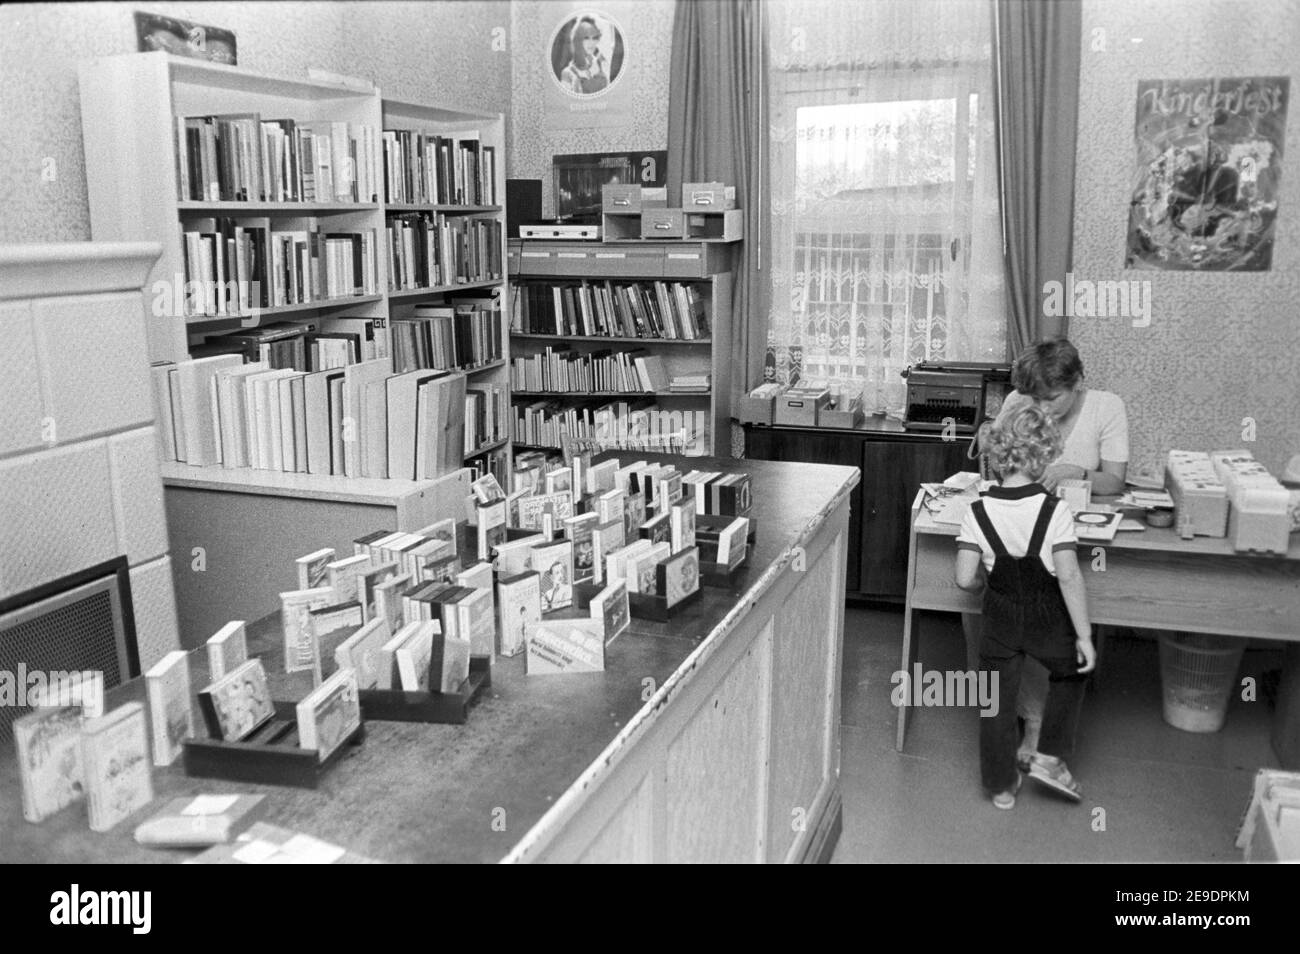 15 settembre 1982, Sassonia, Zschortau: Radio play cassette - nella biblioteca comunale Zschortau sono tra gli scaffali del libro nell'autunno di 1982 bambini e lettori adulti. Data esatta della registrazione non nota. Foto: Volkmar Heinz/dpa-Zentralbild/ZB Foto Stock